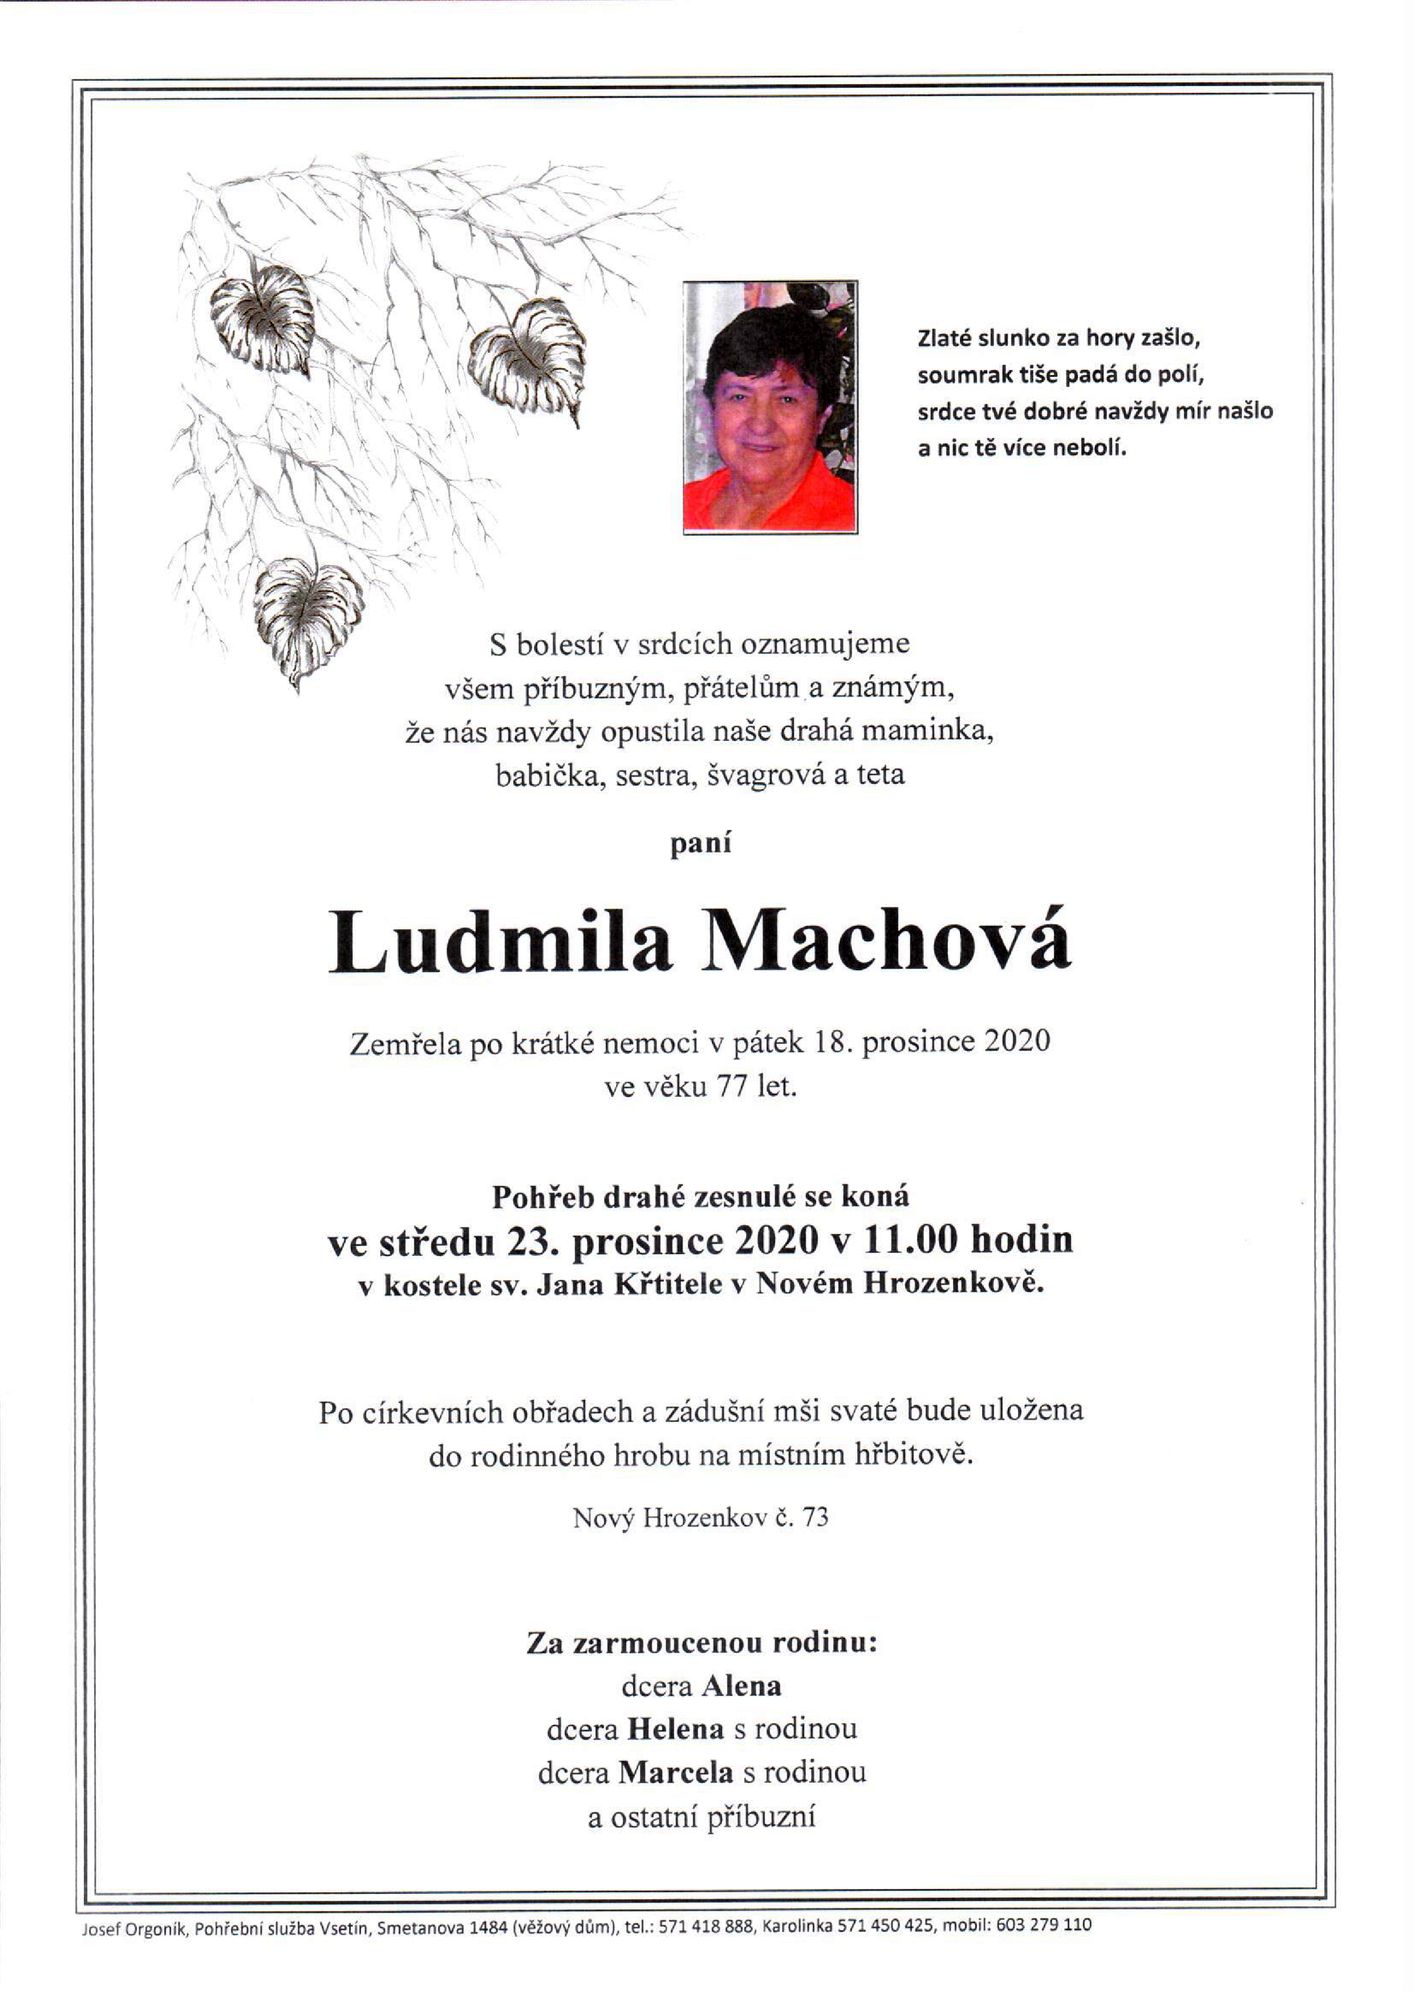 Ludmila Machová